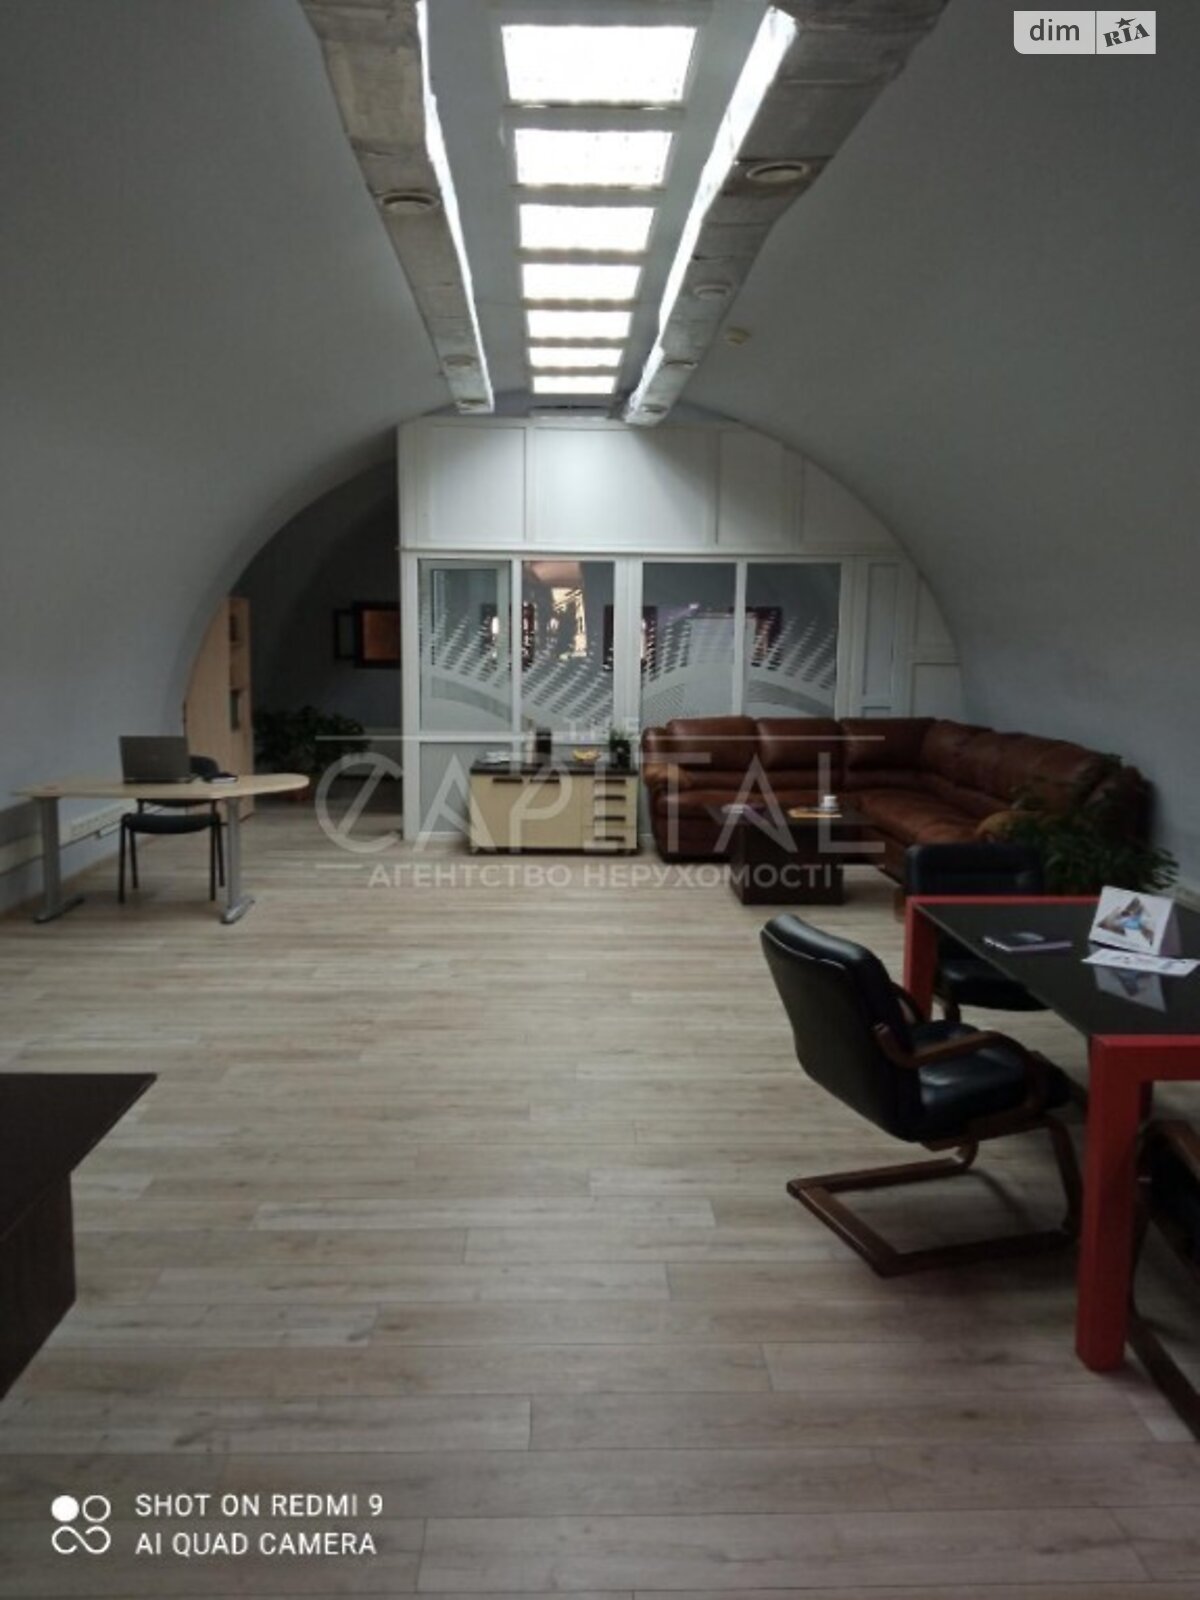 Аренда офисного помещения в Киеве, Рыбальская улица 22, помещений - 2, этаж - 2 фото 1